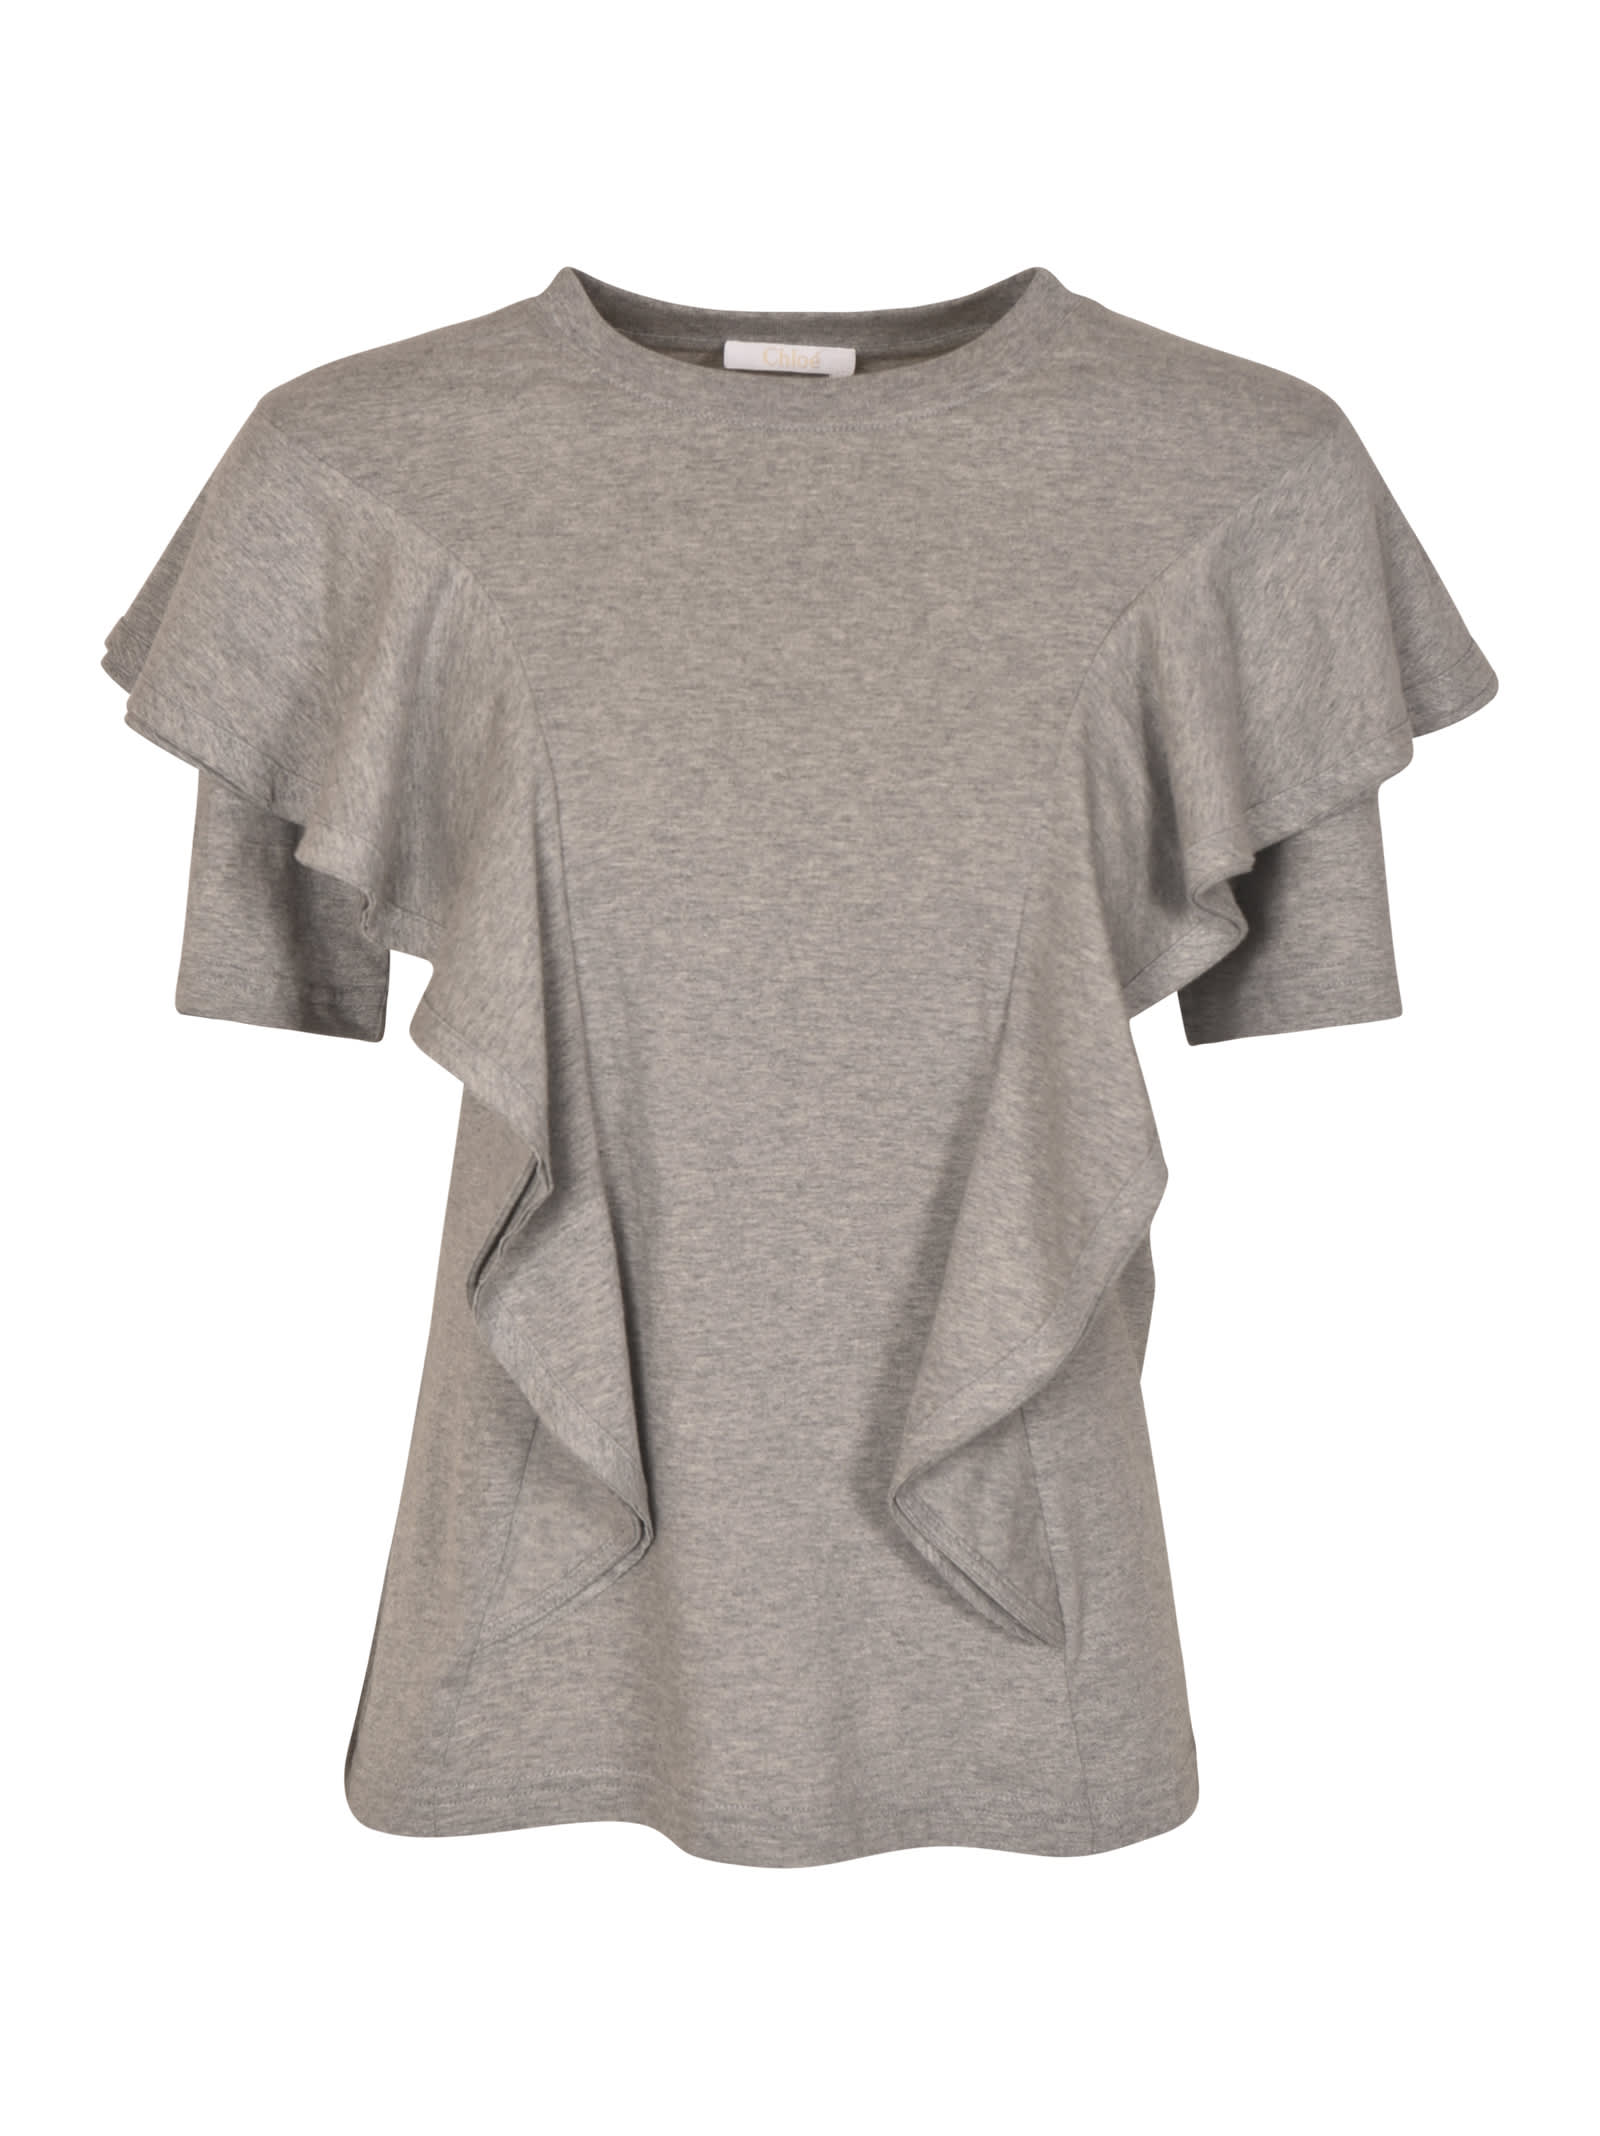 Chloé Ruffled T-shirt